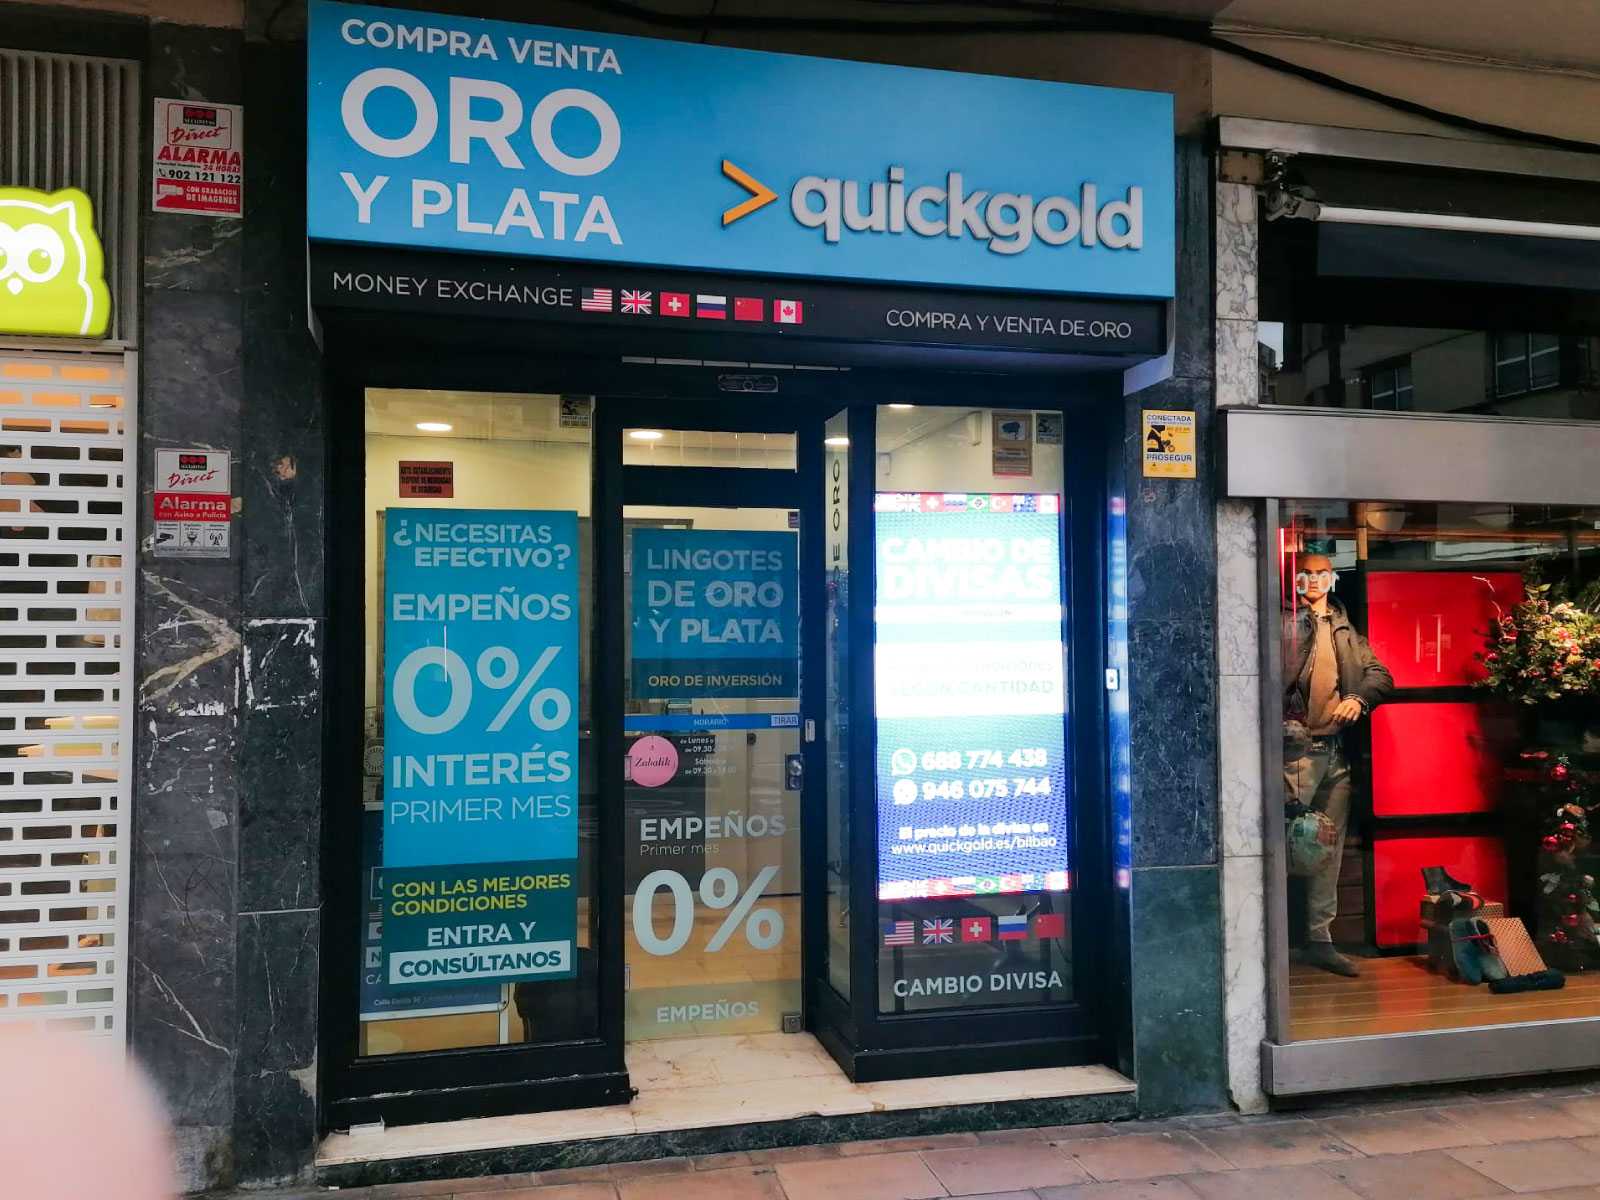 Quickgold Bilbao Compro oro